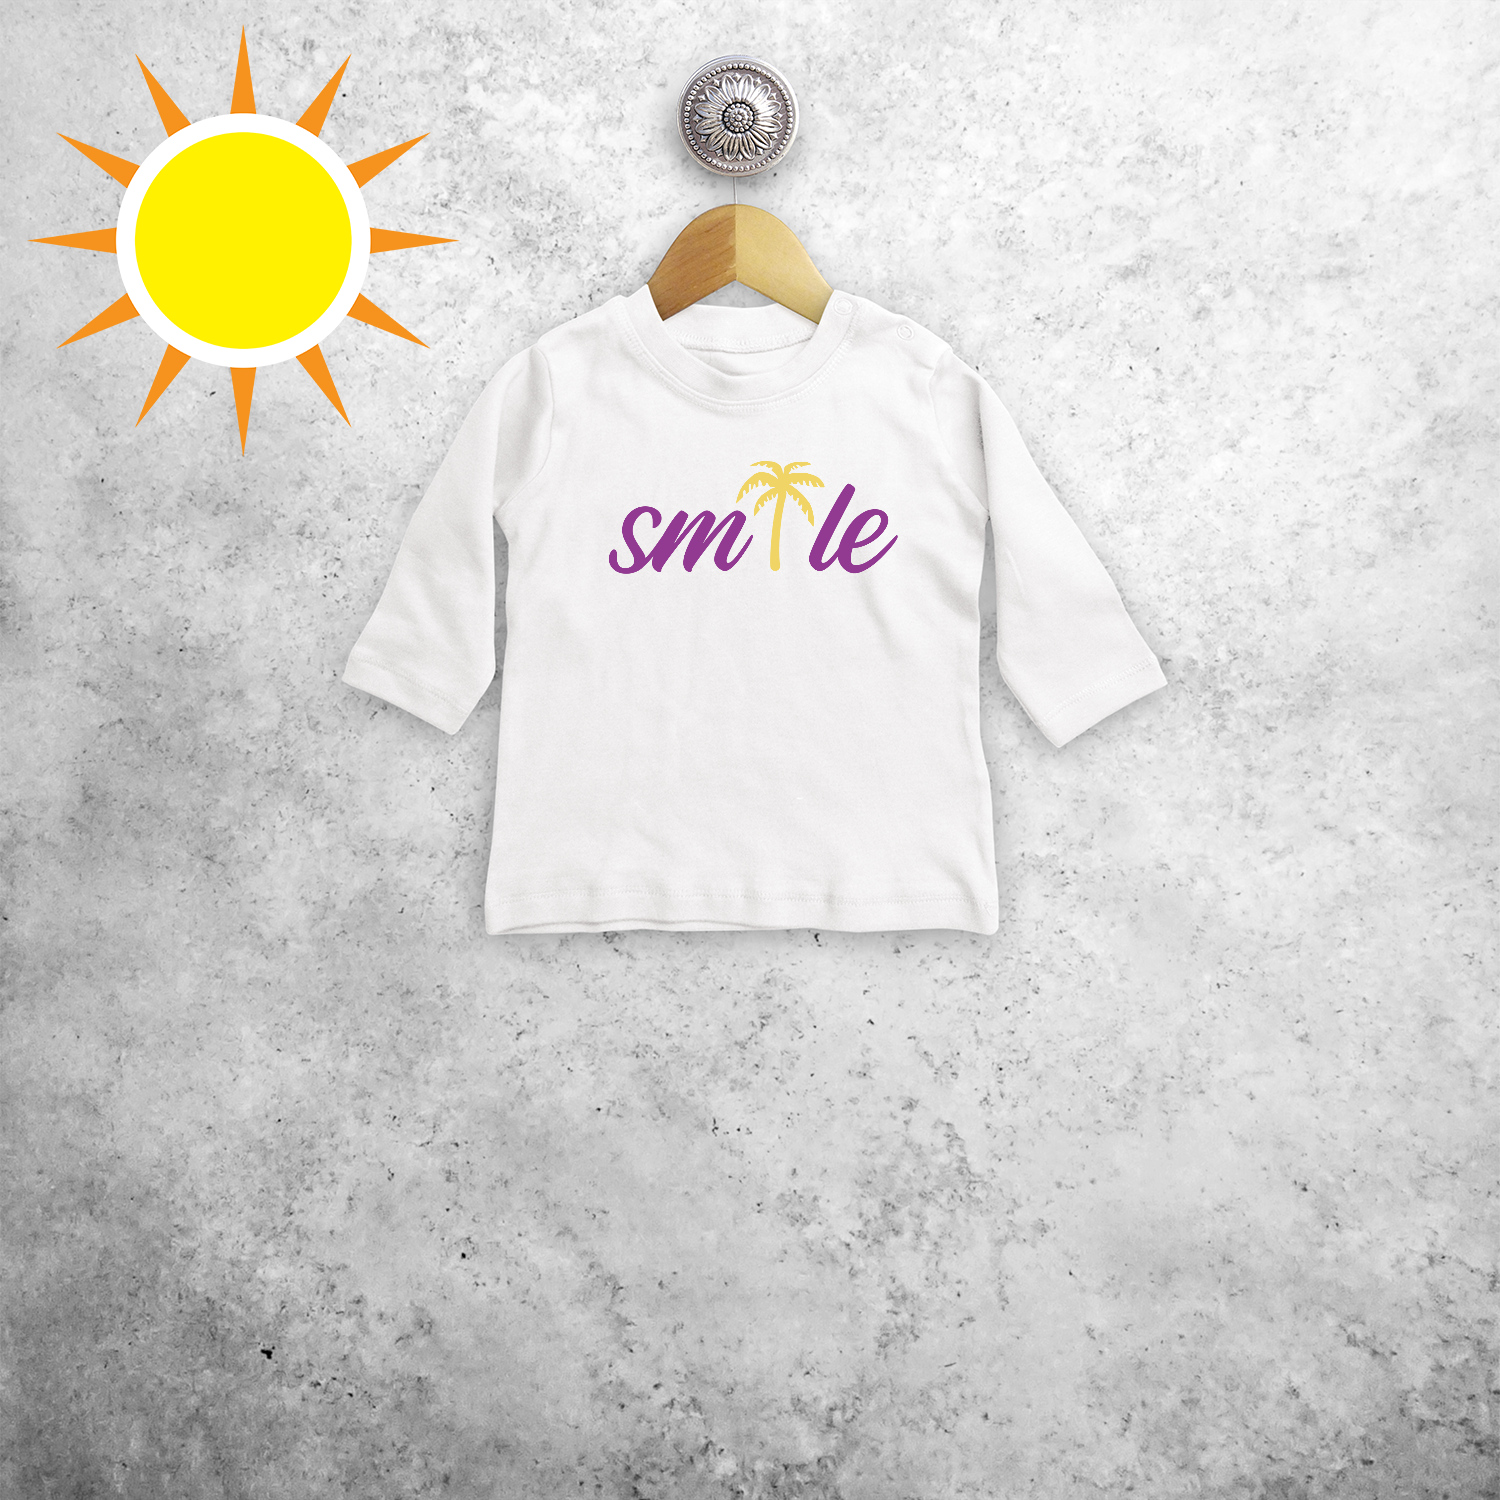 Smile' magisch baby shirt met lange mouwen